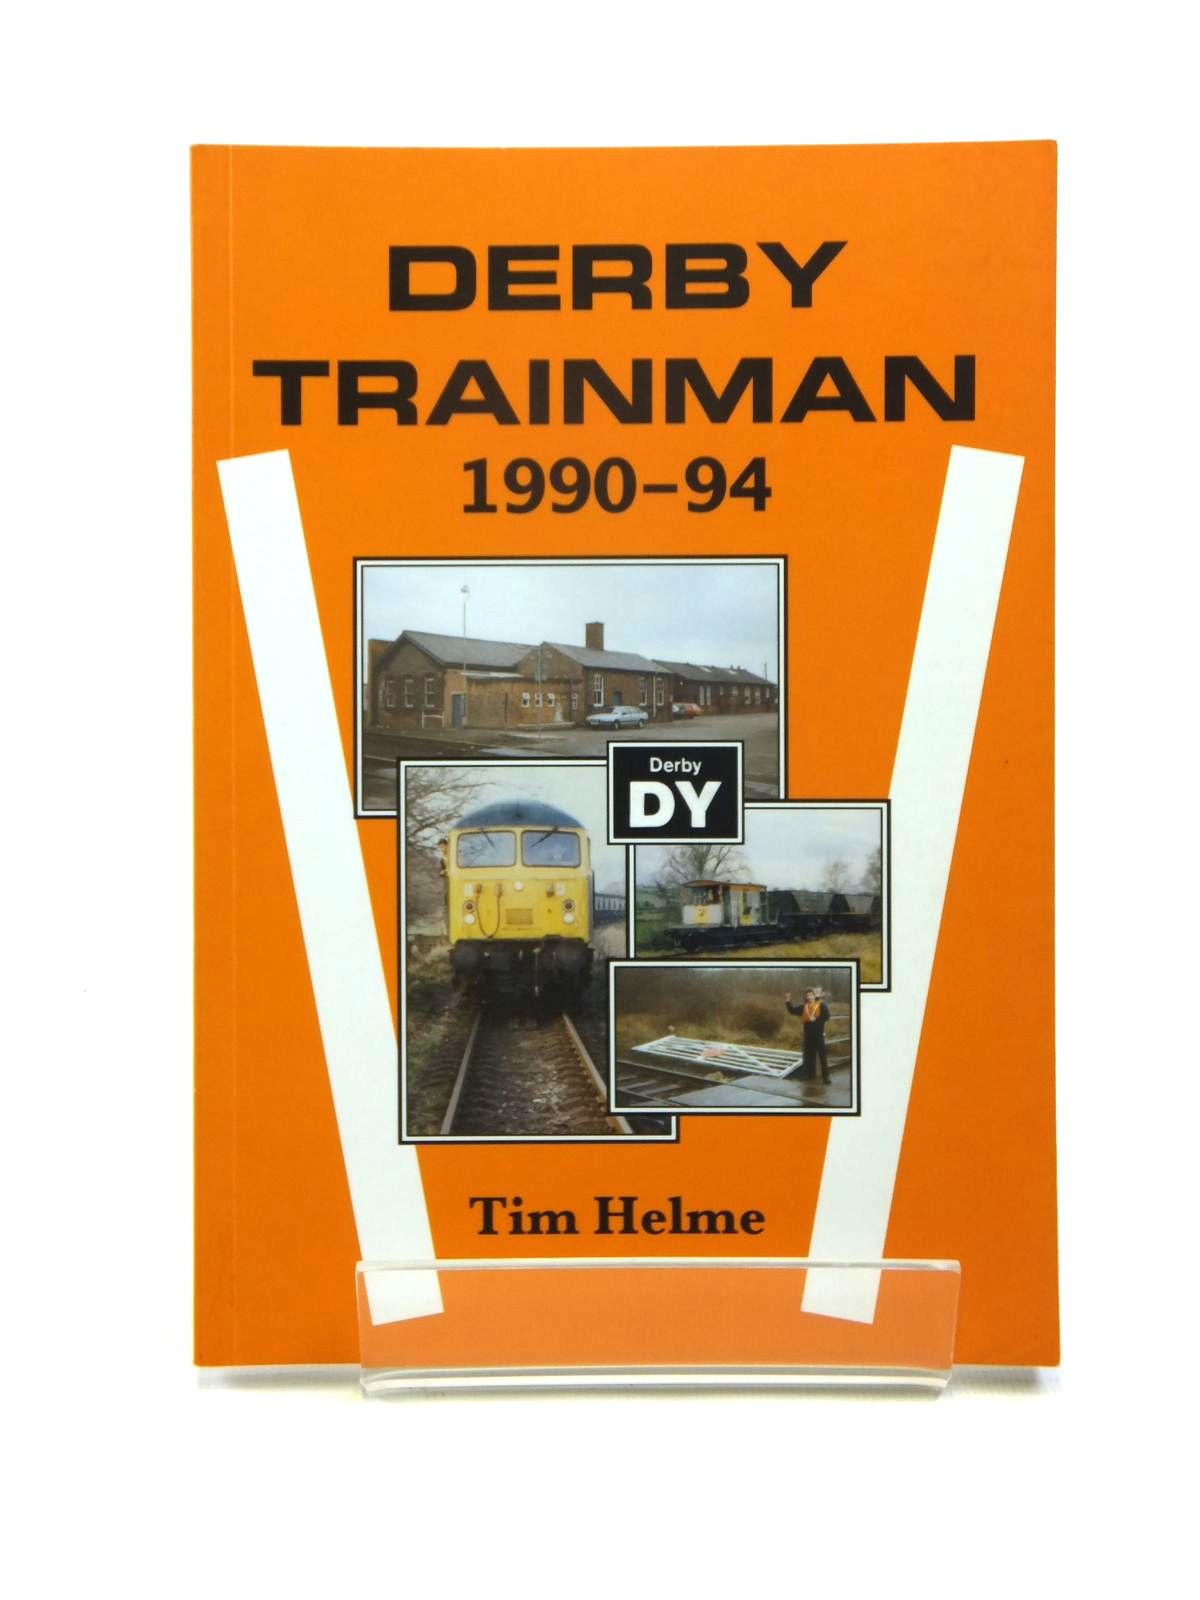 Local history railway / train book by Helme Tim. NEW DERBY TRAINMAN 1990-94 